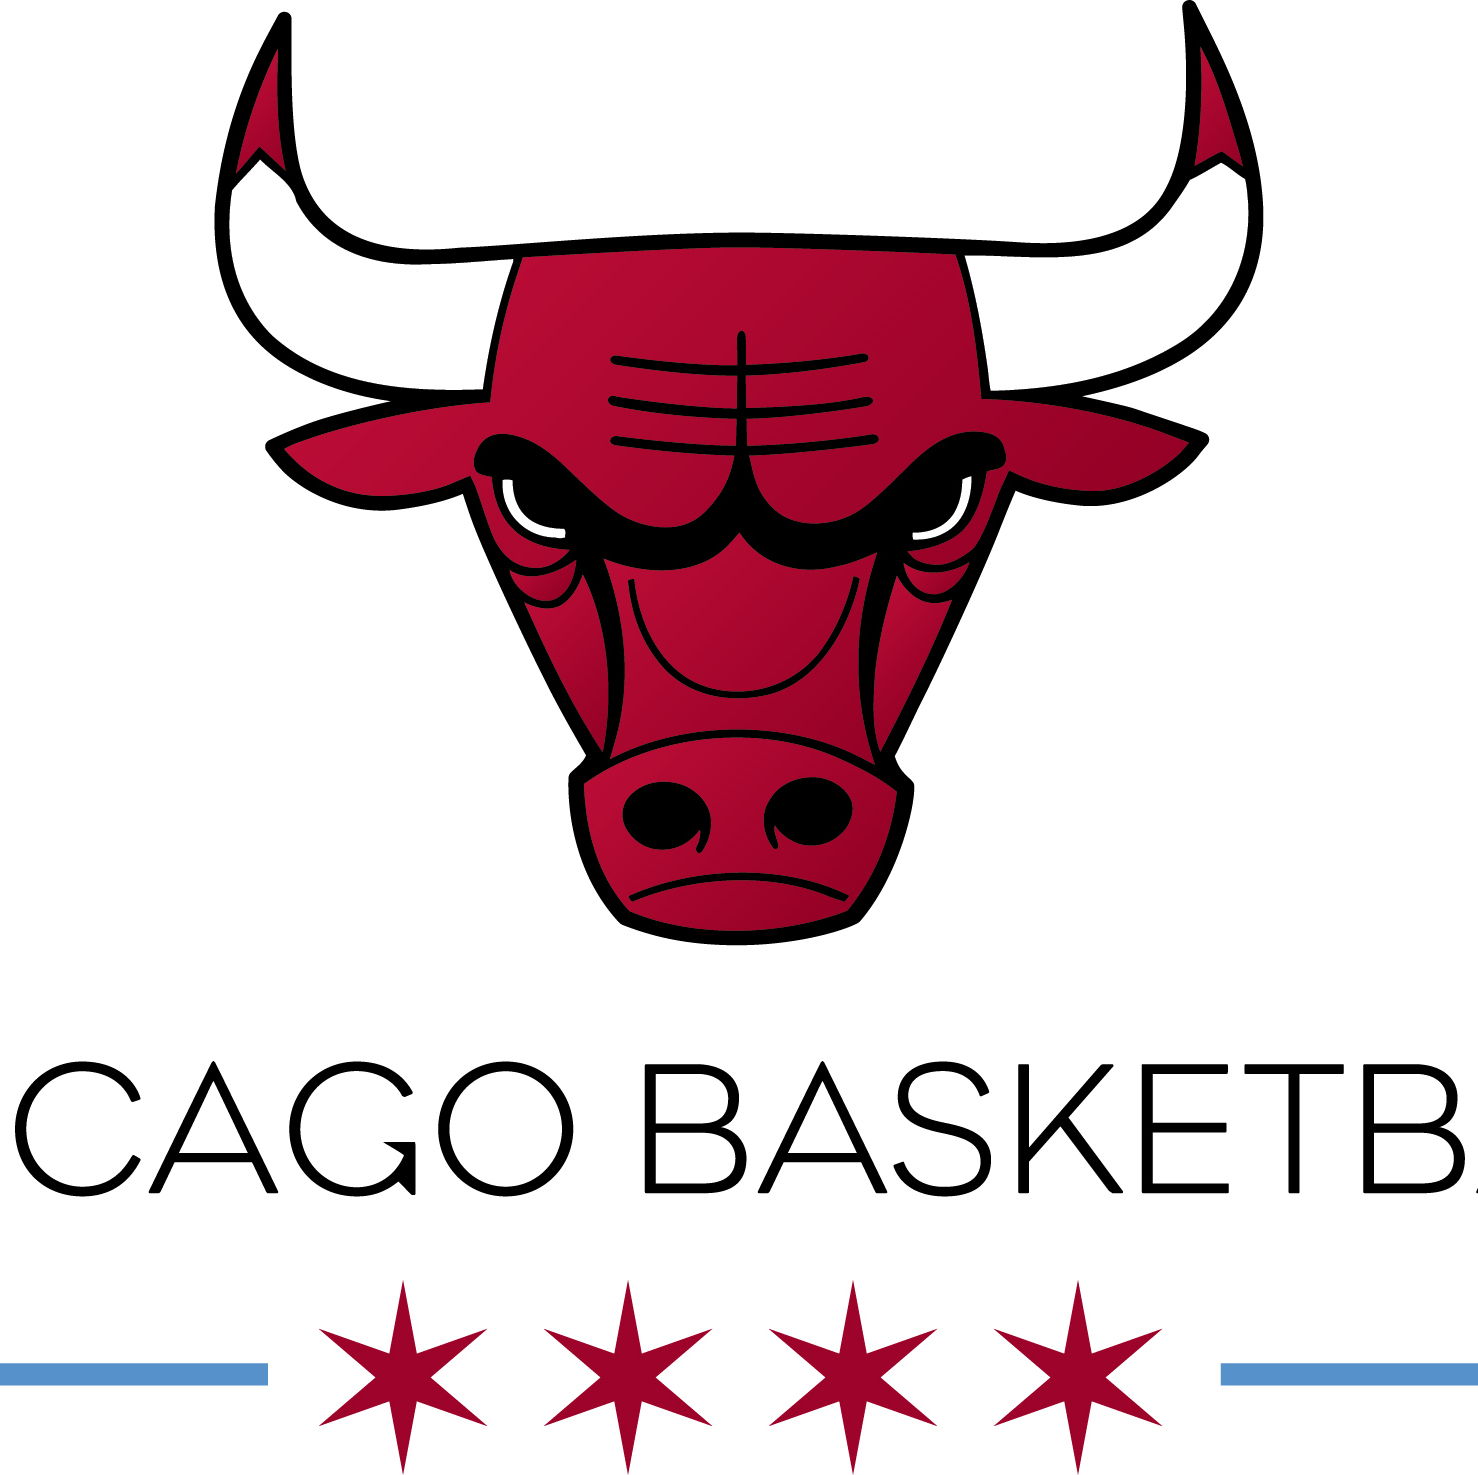 Chicago Bulls on Livestream